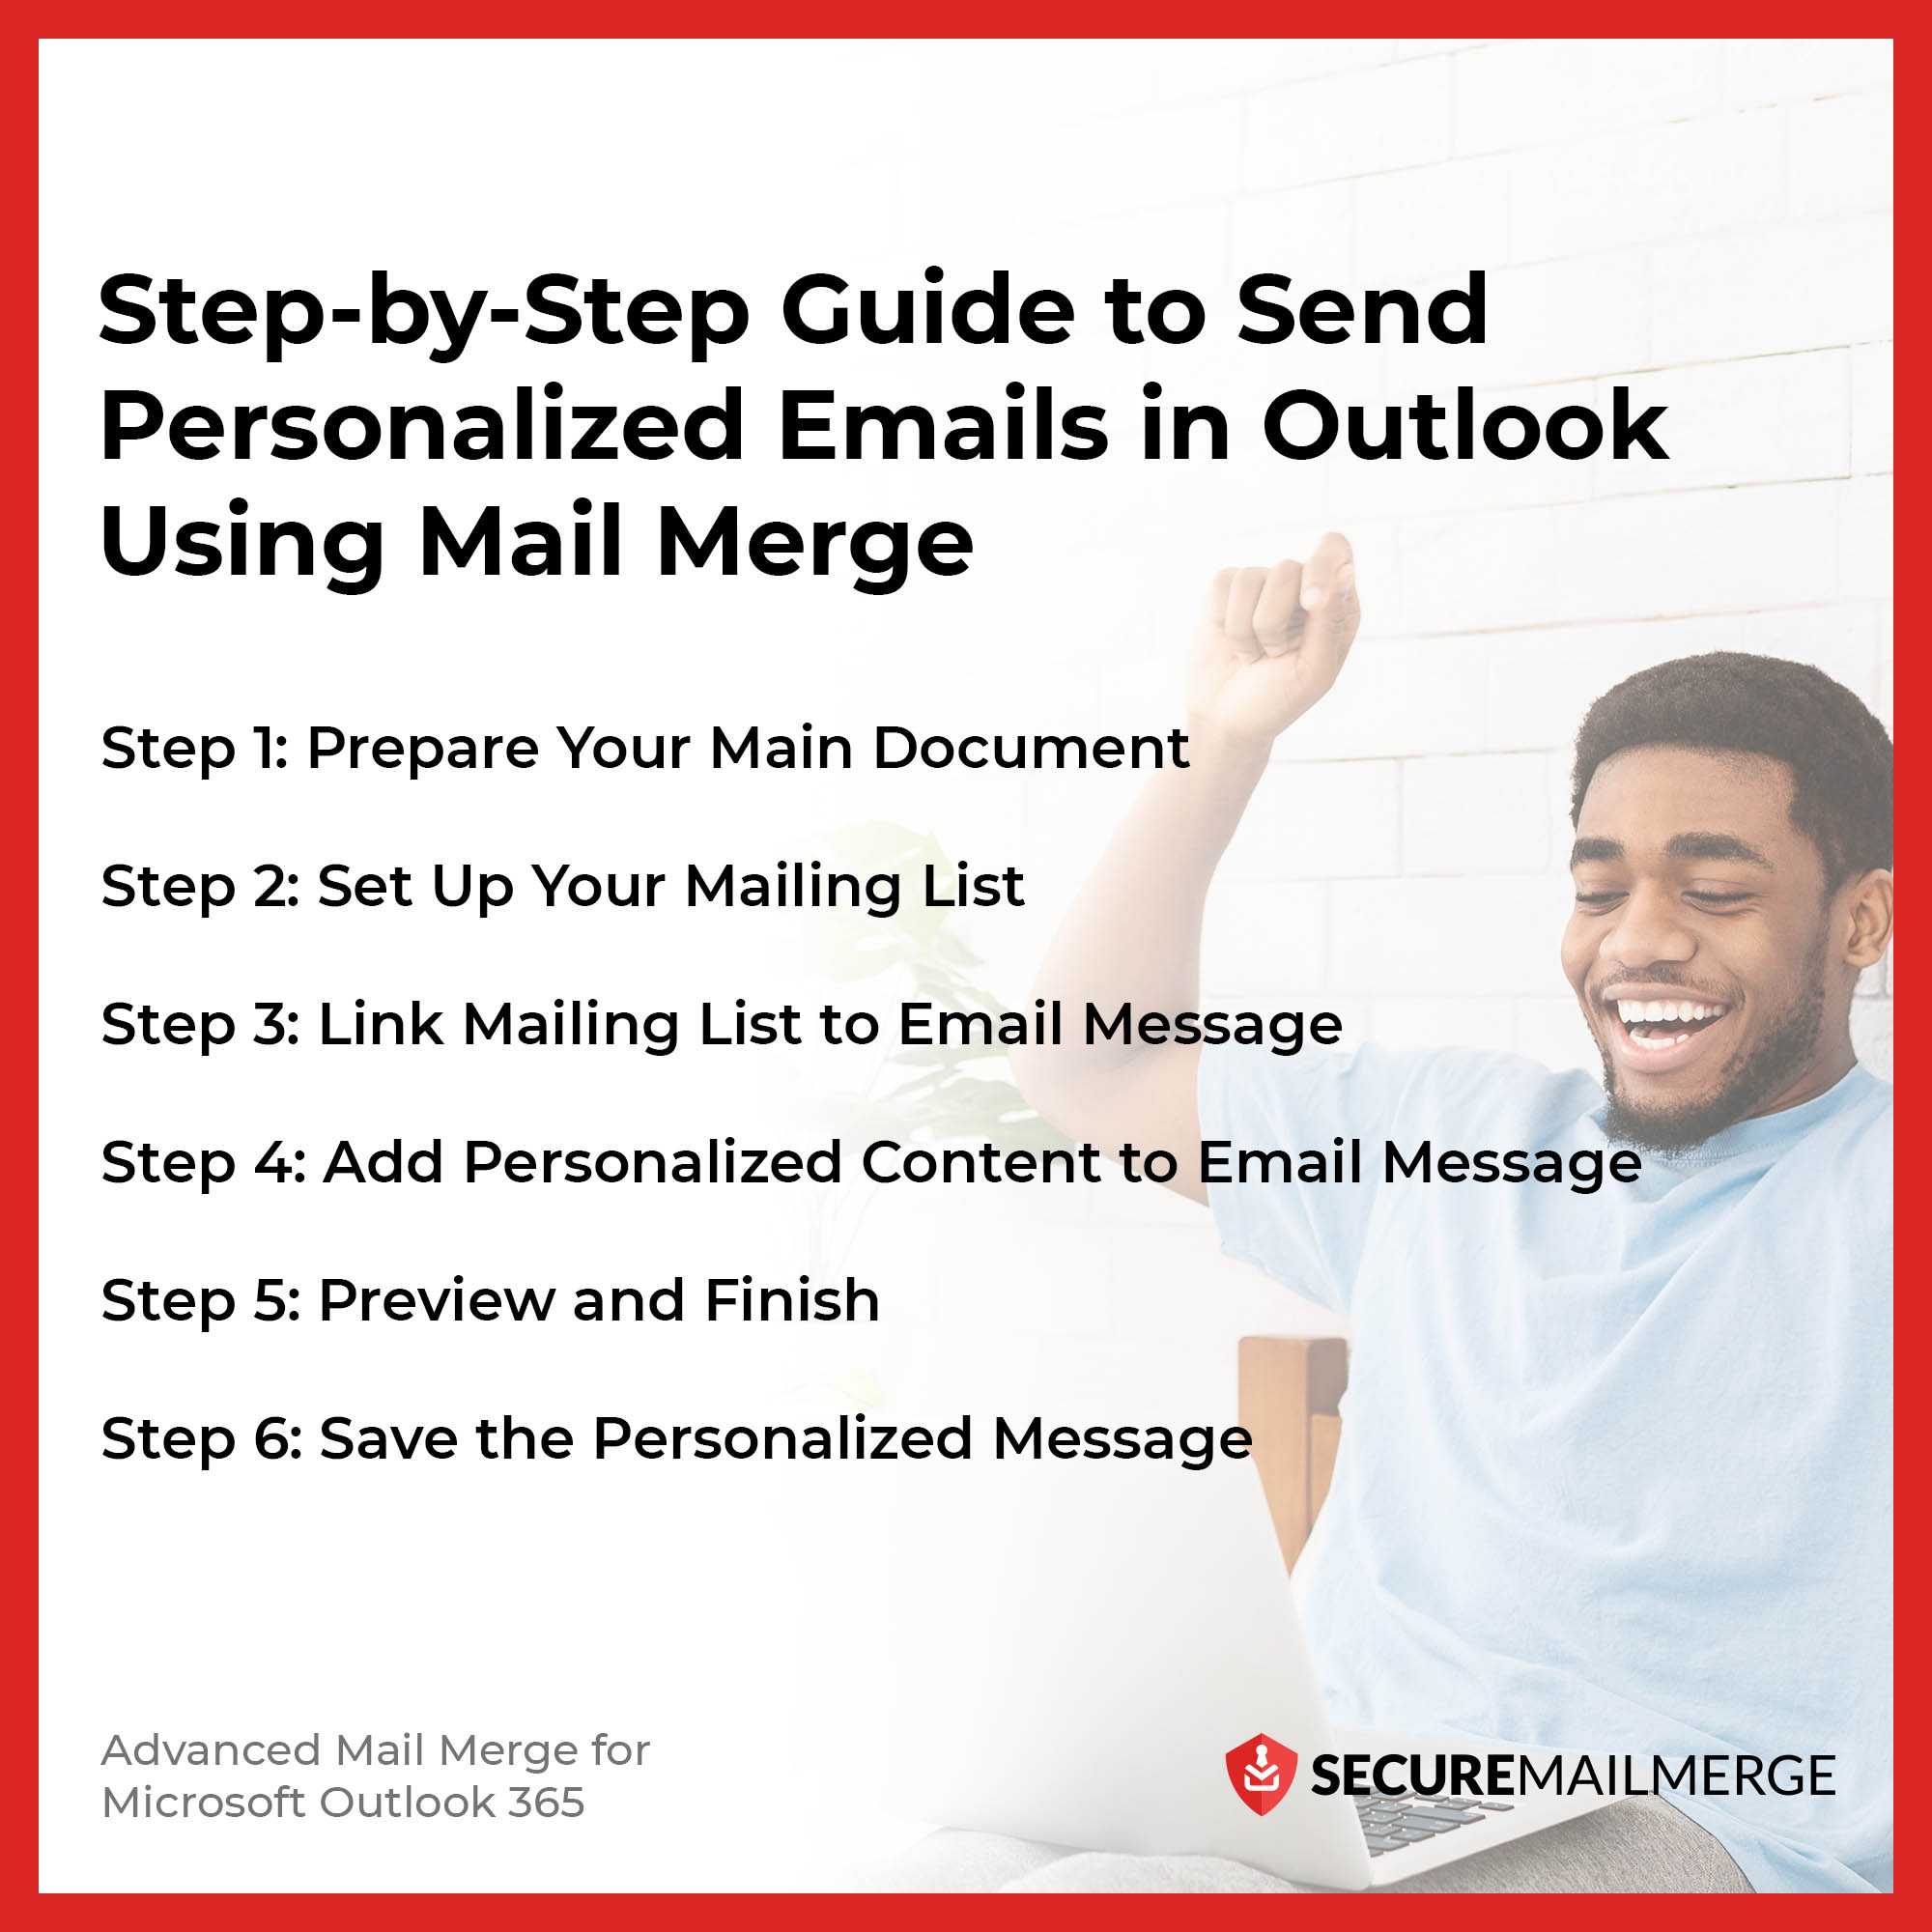 Guía paso a paso para enviar correos electrónicos personalizados en Outlook utilizando Mail Merge